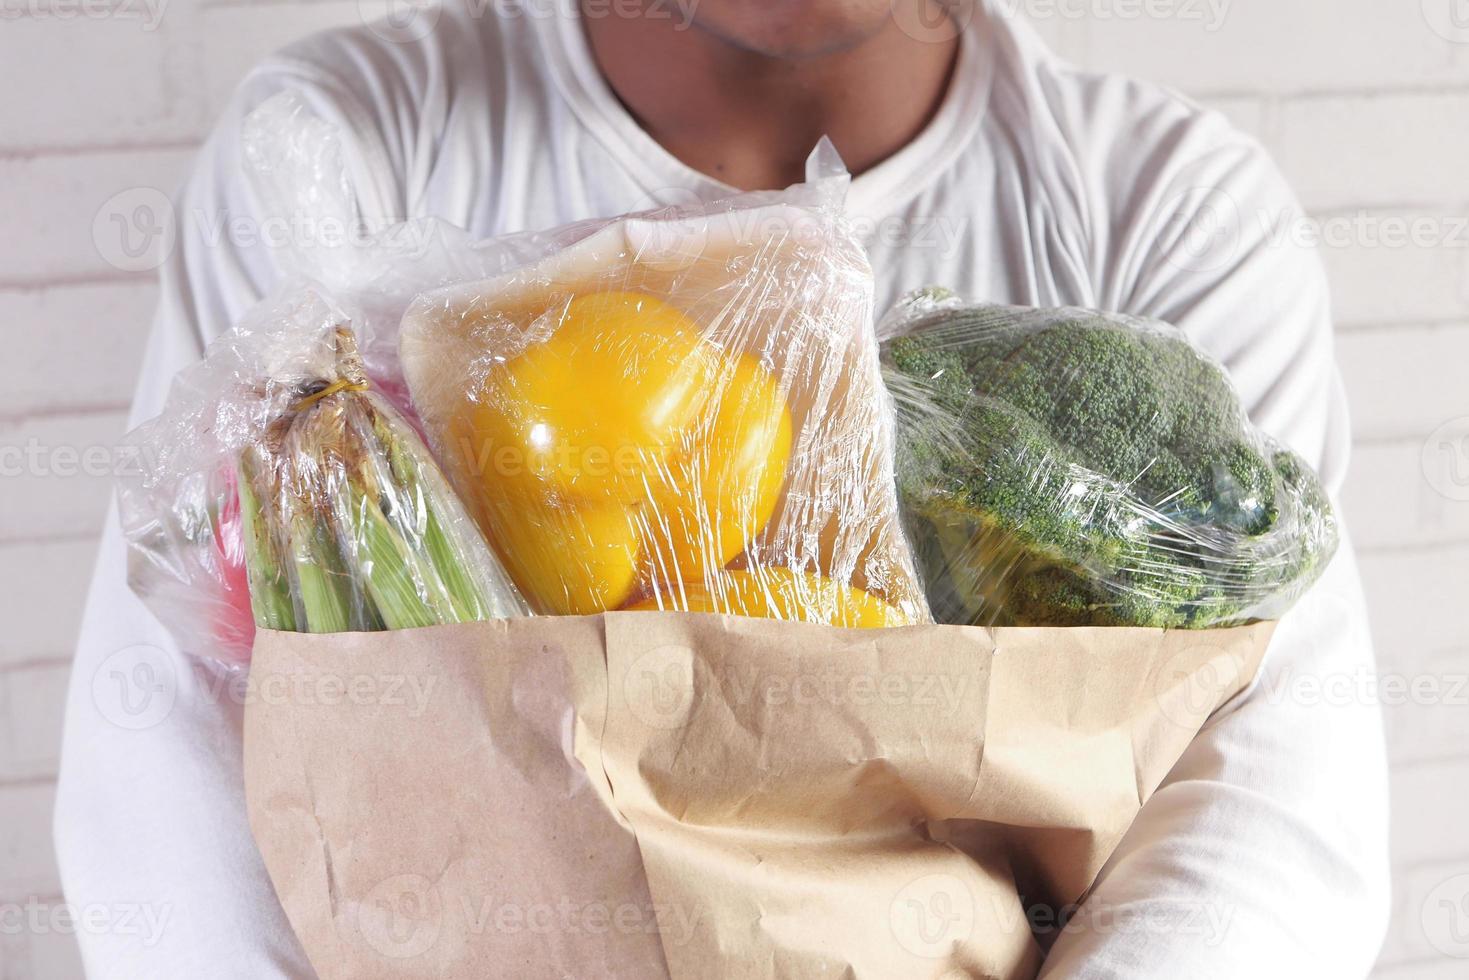 carregando vegetais em uma sacola marrom foto